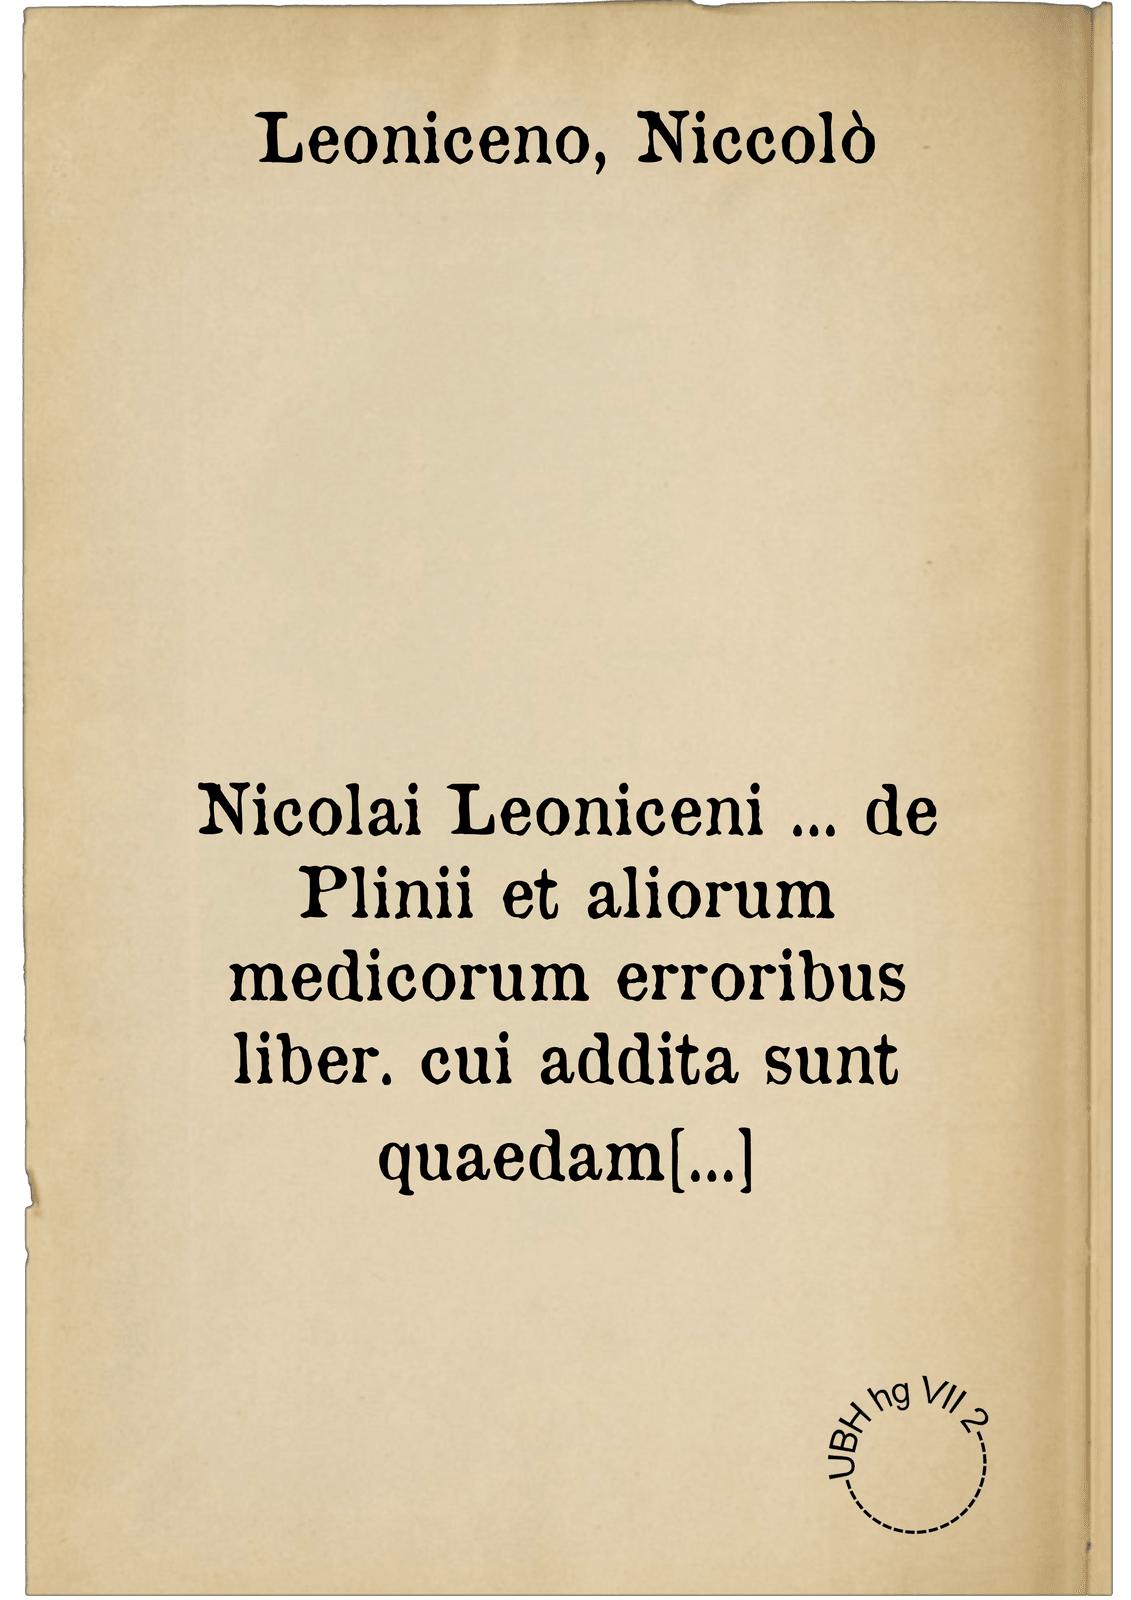 Nicolai Leoniceni ... de Plinii et aliorum medicorum erroribus liber. cui addita sunt quaedam eiusdem autoris de herbis & fruticibus, animalibus, metallis, serpentibus, tiro seu vipera